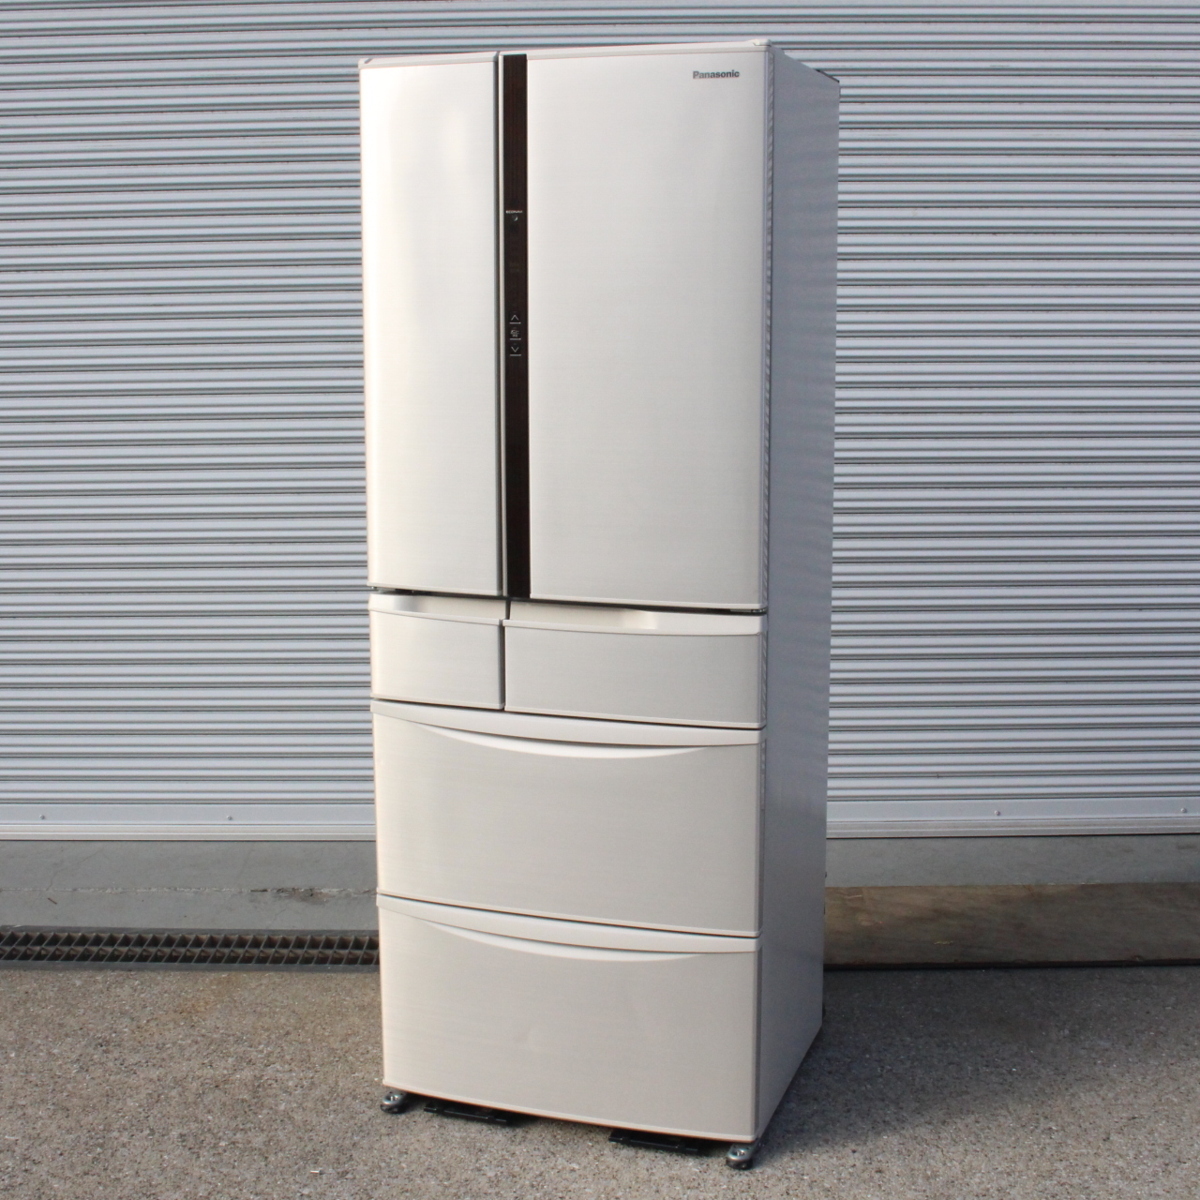 東京都中野区にて パナソニック ノンフロン冷凍冷蔵庫 NR-F460V 2015年製 を出張買取させて頂きました。